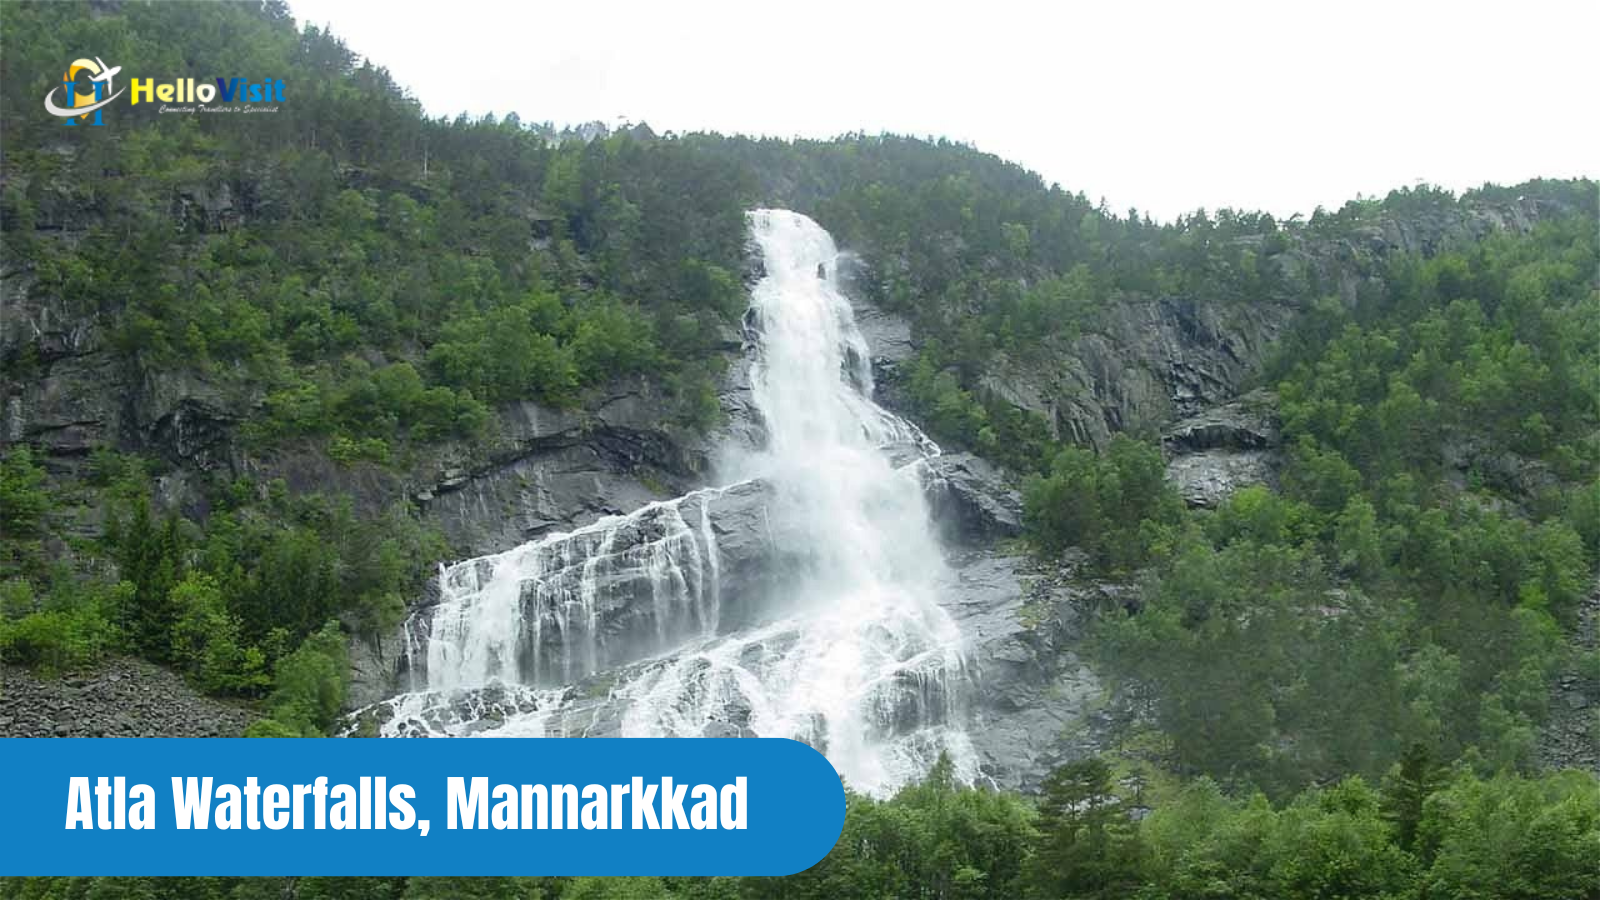 Atla Waterfalls, Mannarkkad